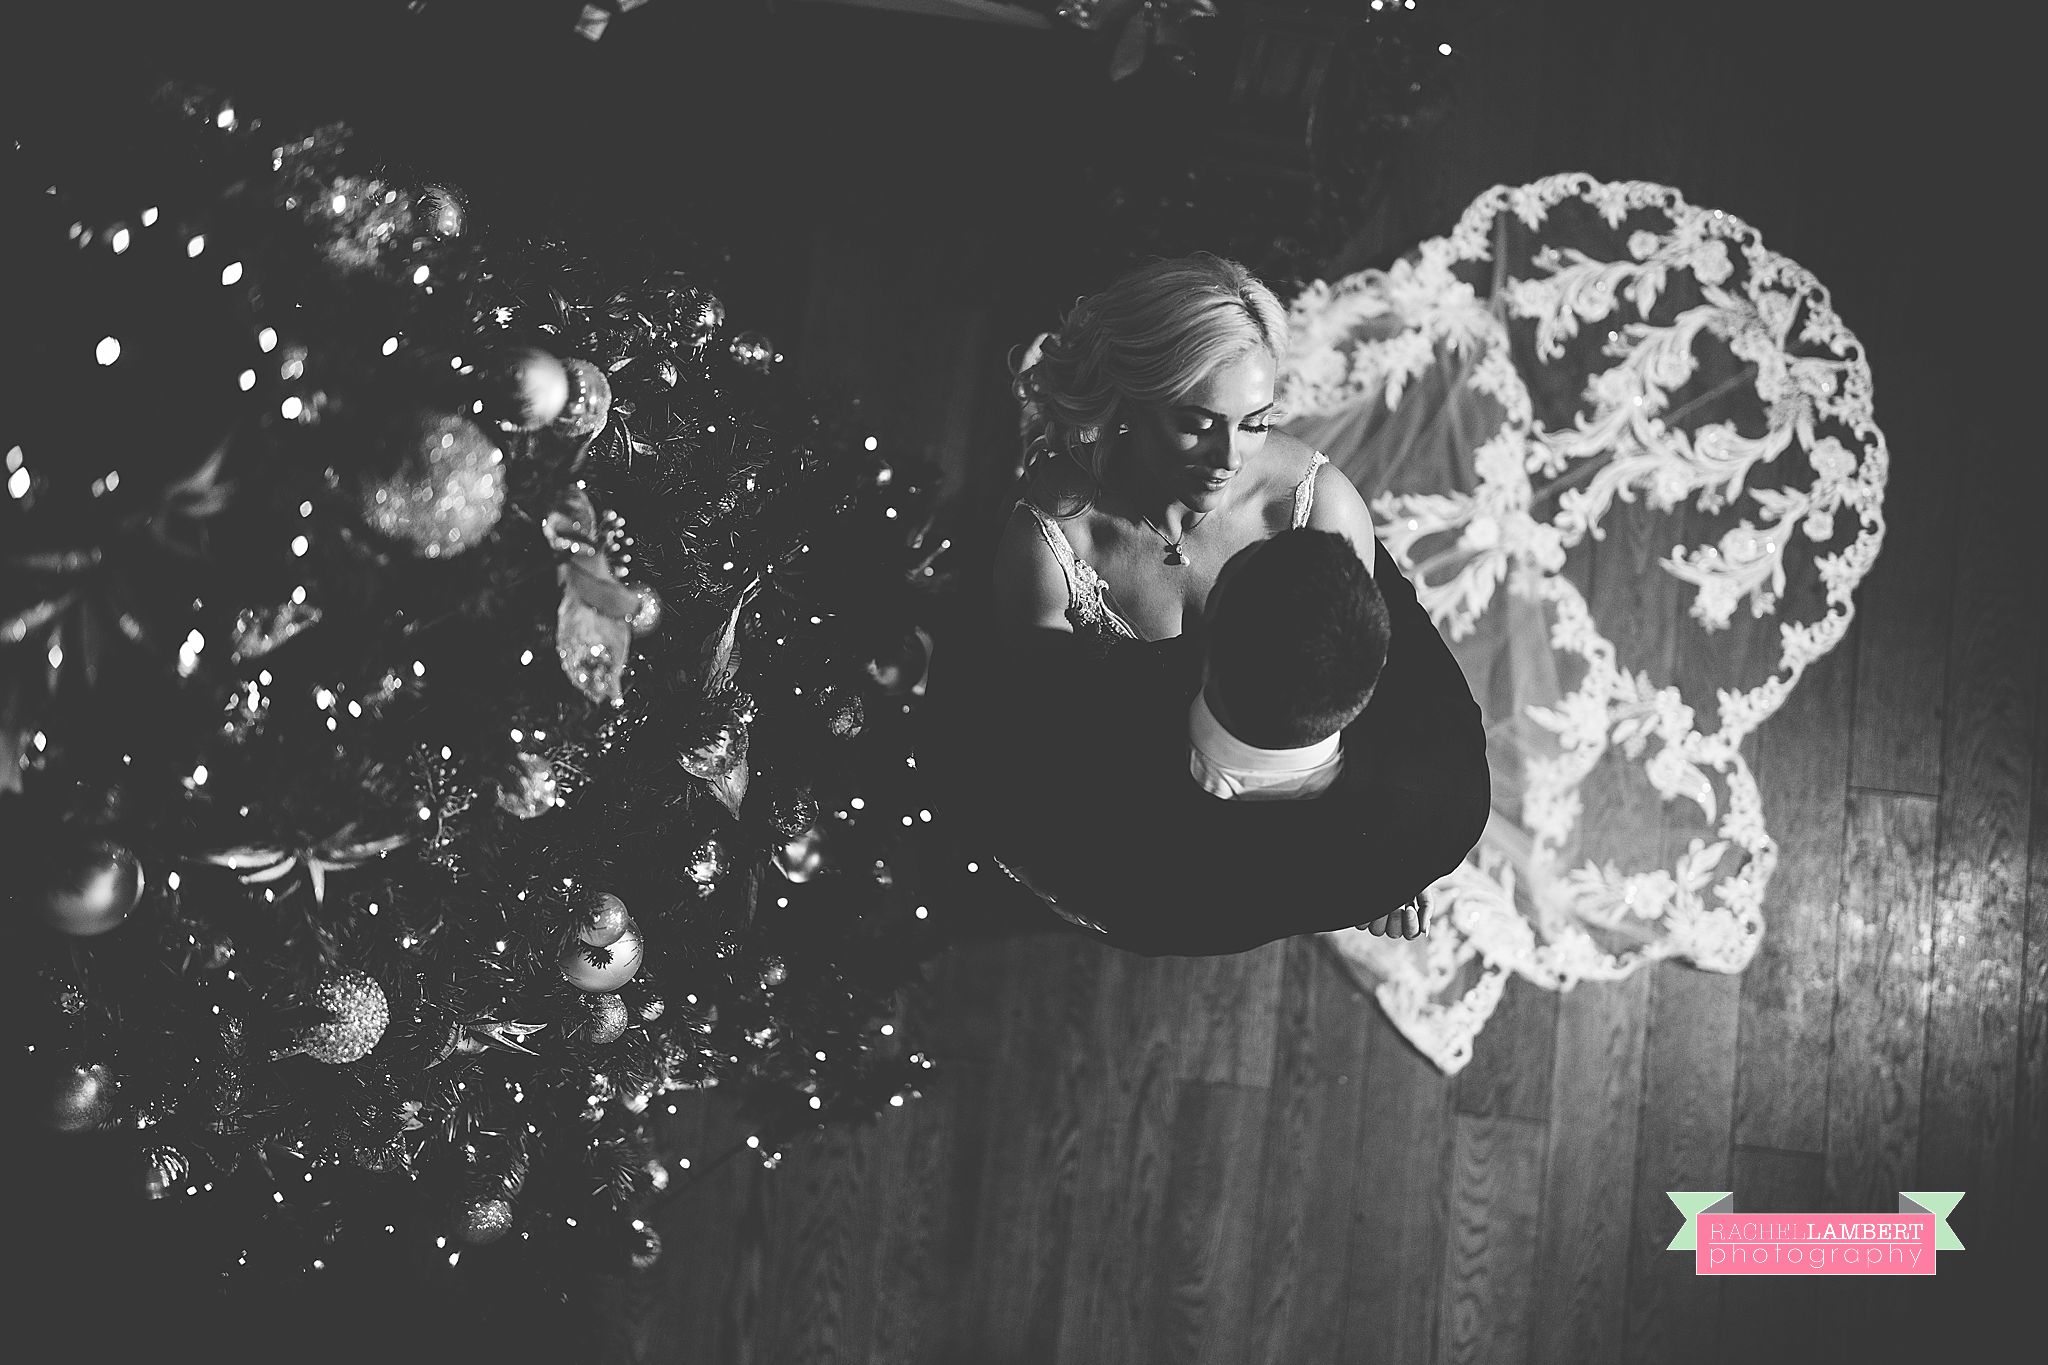 Hensol Castle Christmas Wedding rachel lambert photography 